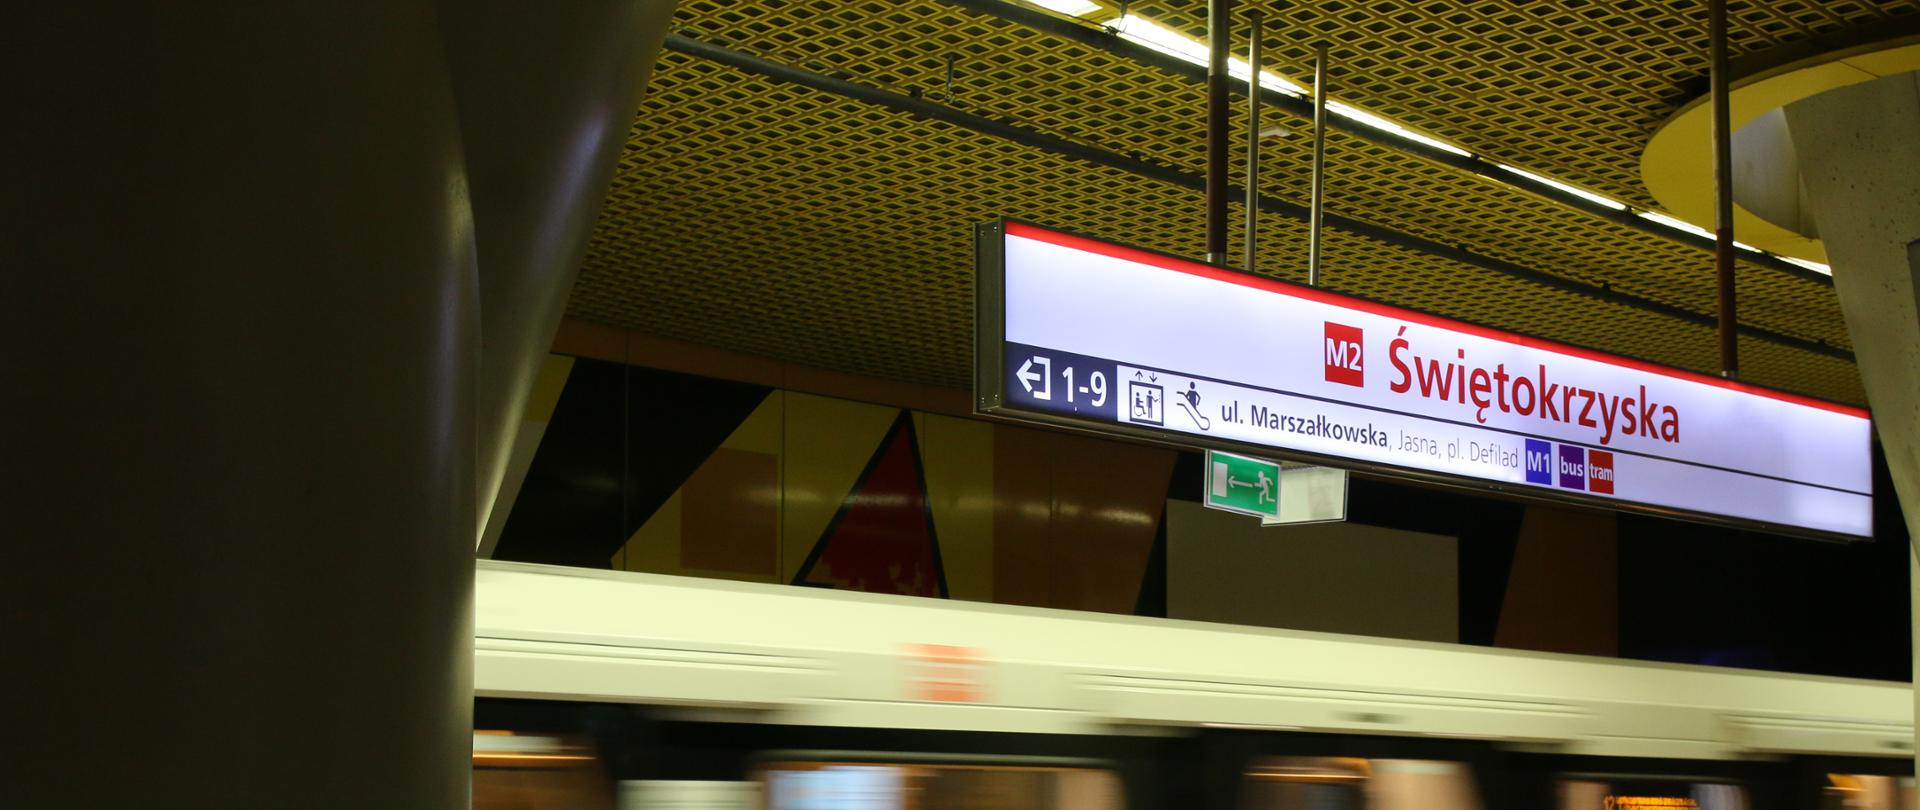 Widok na stację, fragment wagonika metra oraz nazwę stacji Świętokrzyska